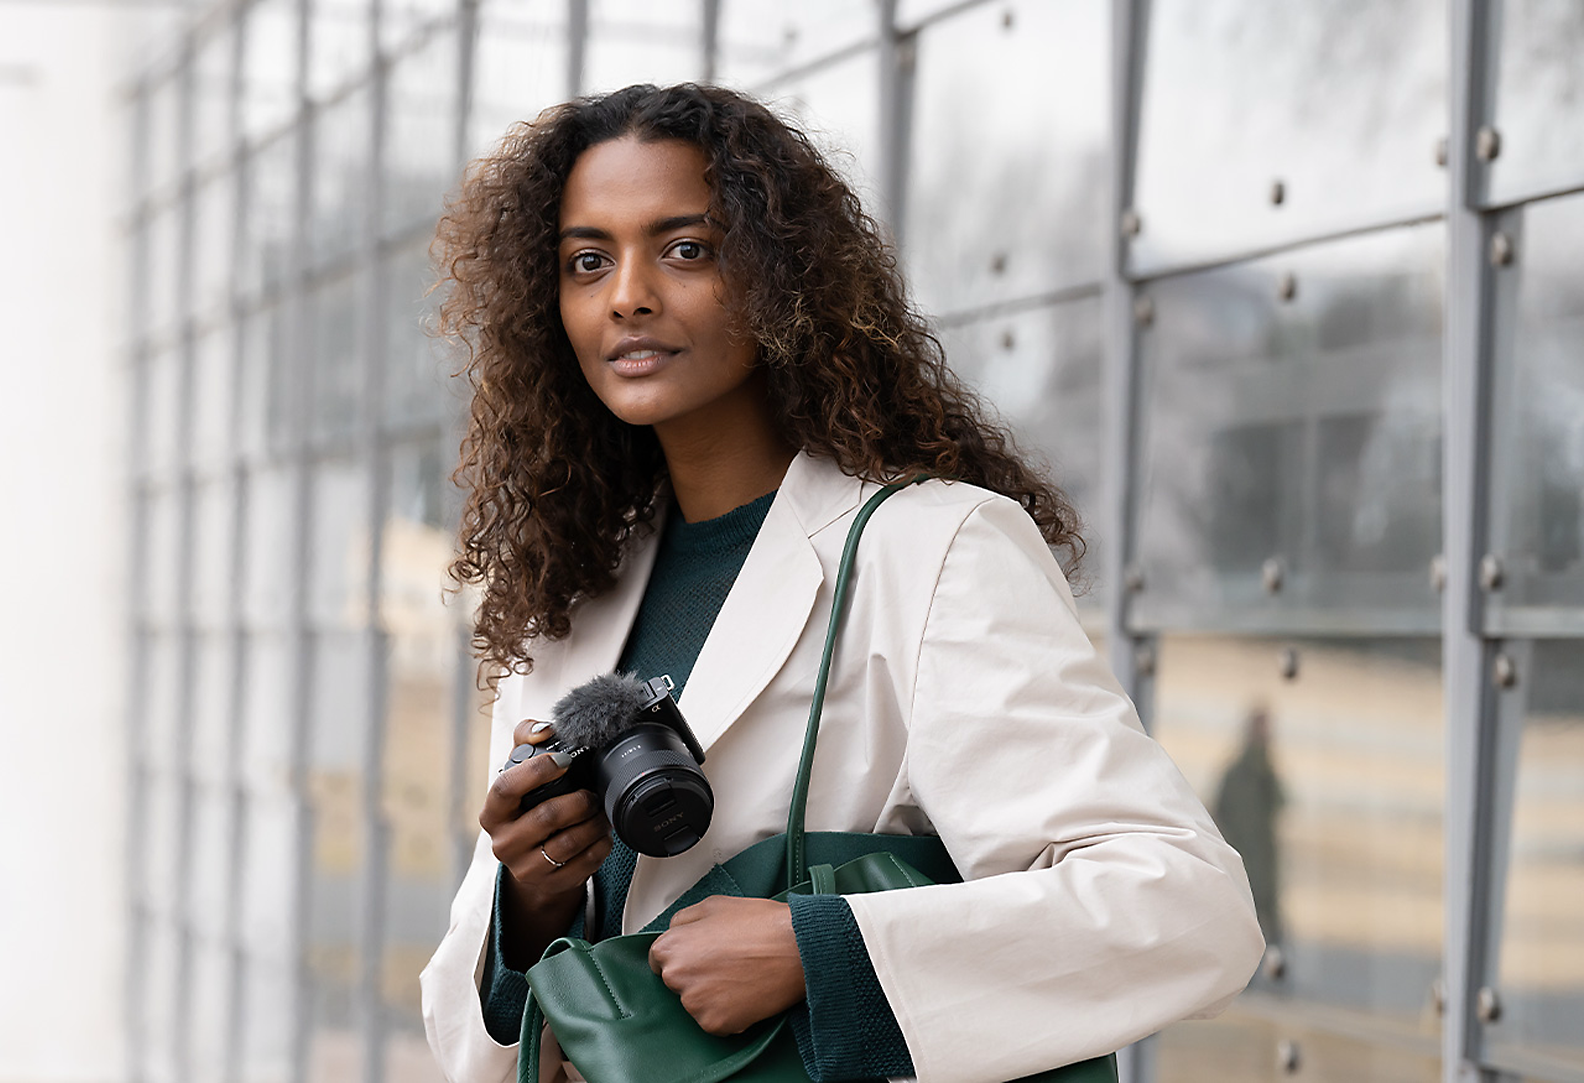 Ein Model nimmt eine Kamera aus einer Tasche